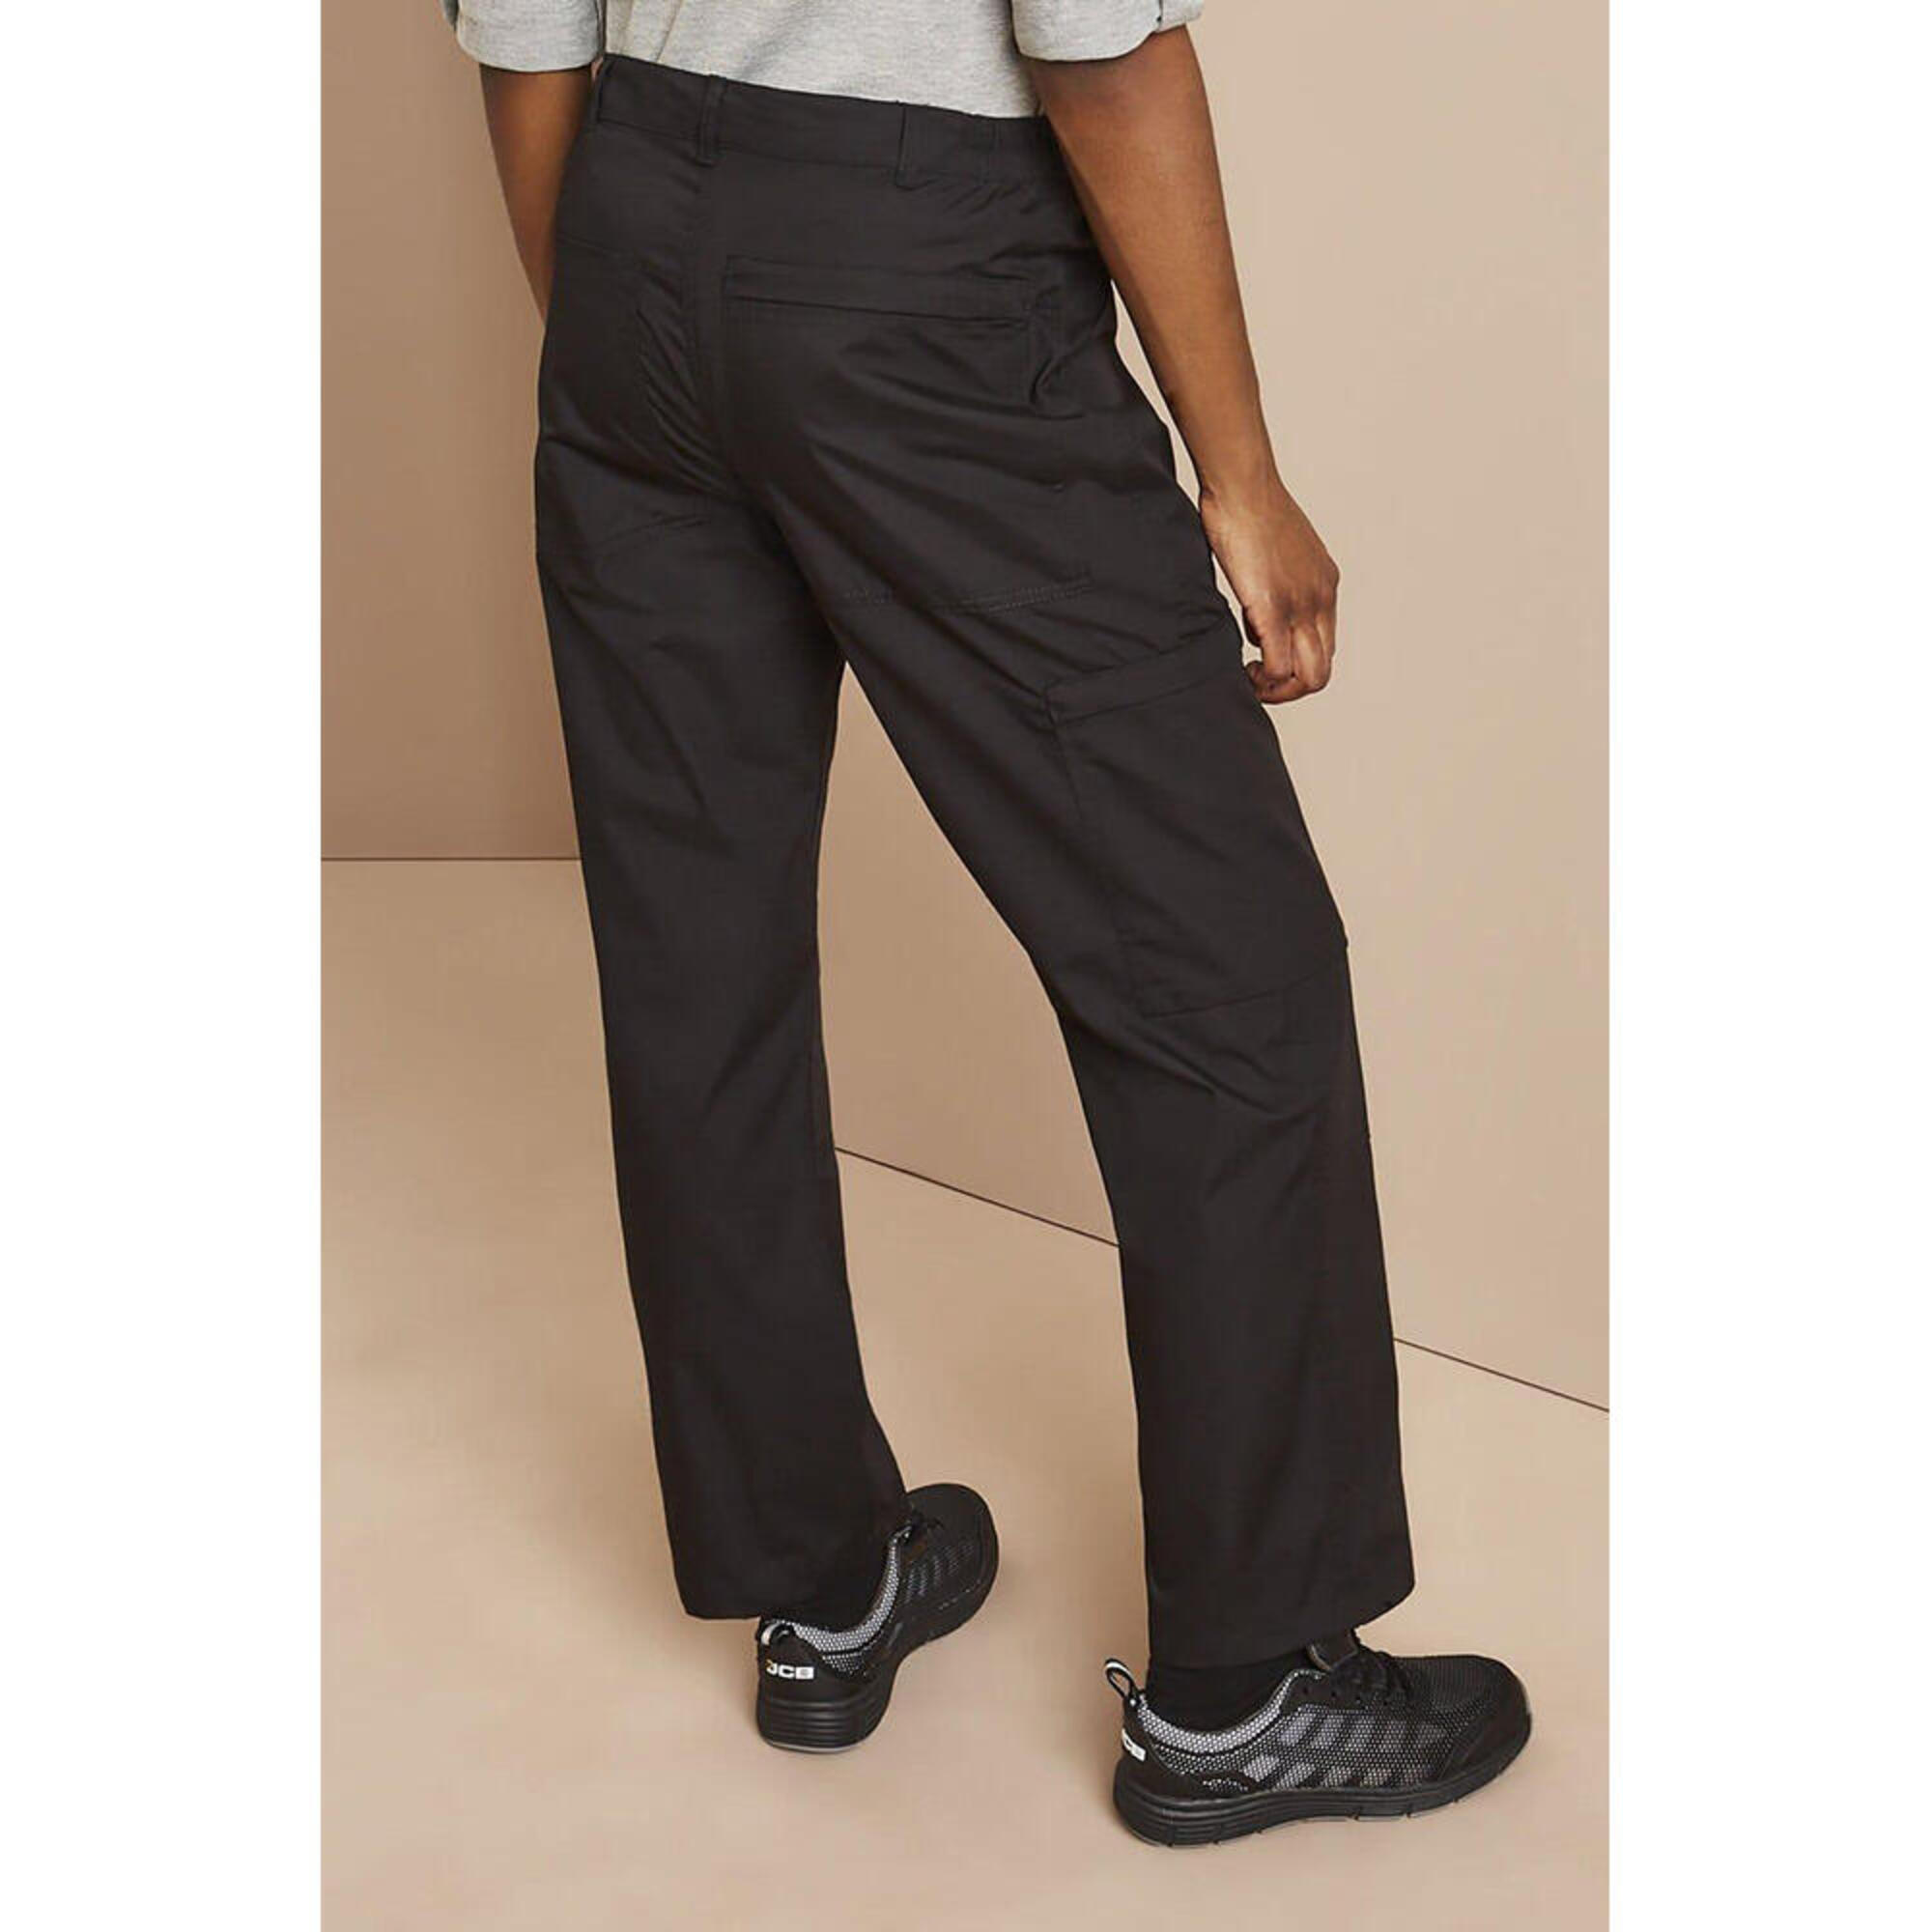 Ladies New Action Trouser (Short) / Pants (Black) 2/4